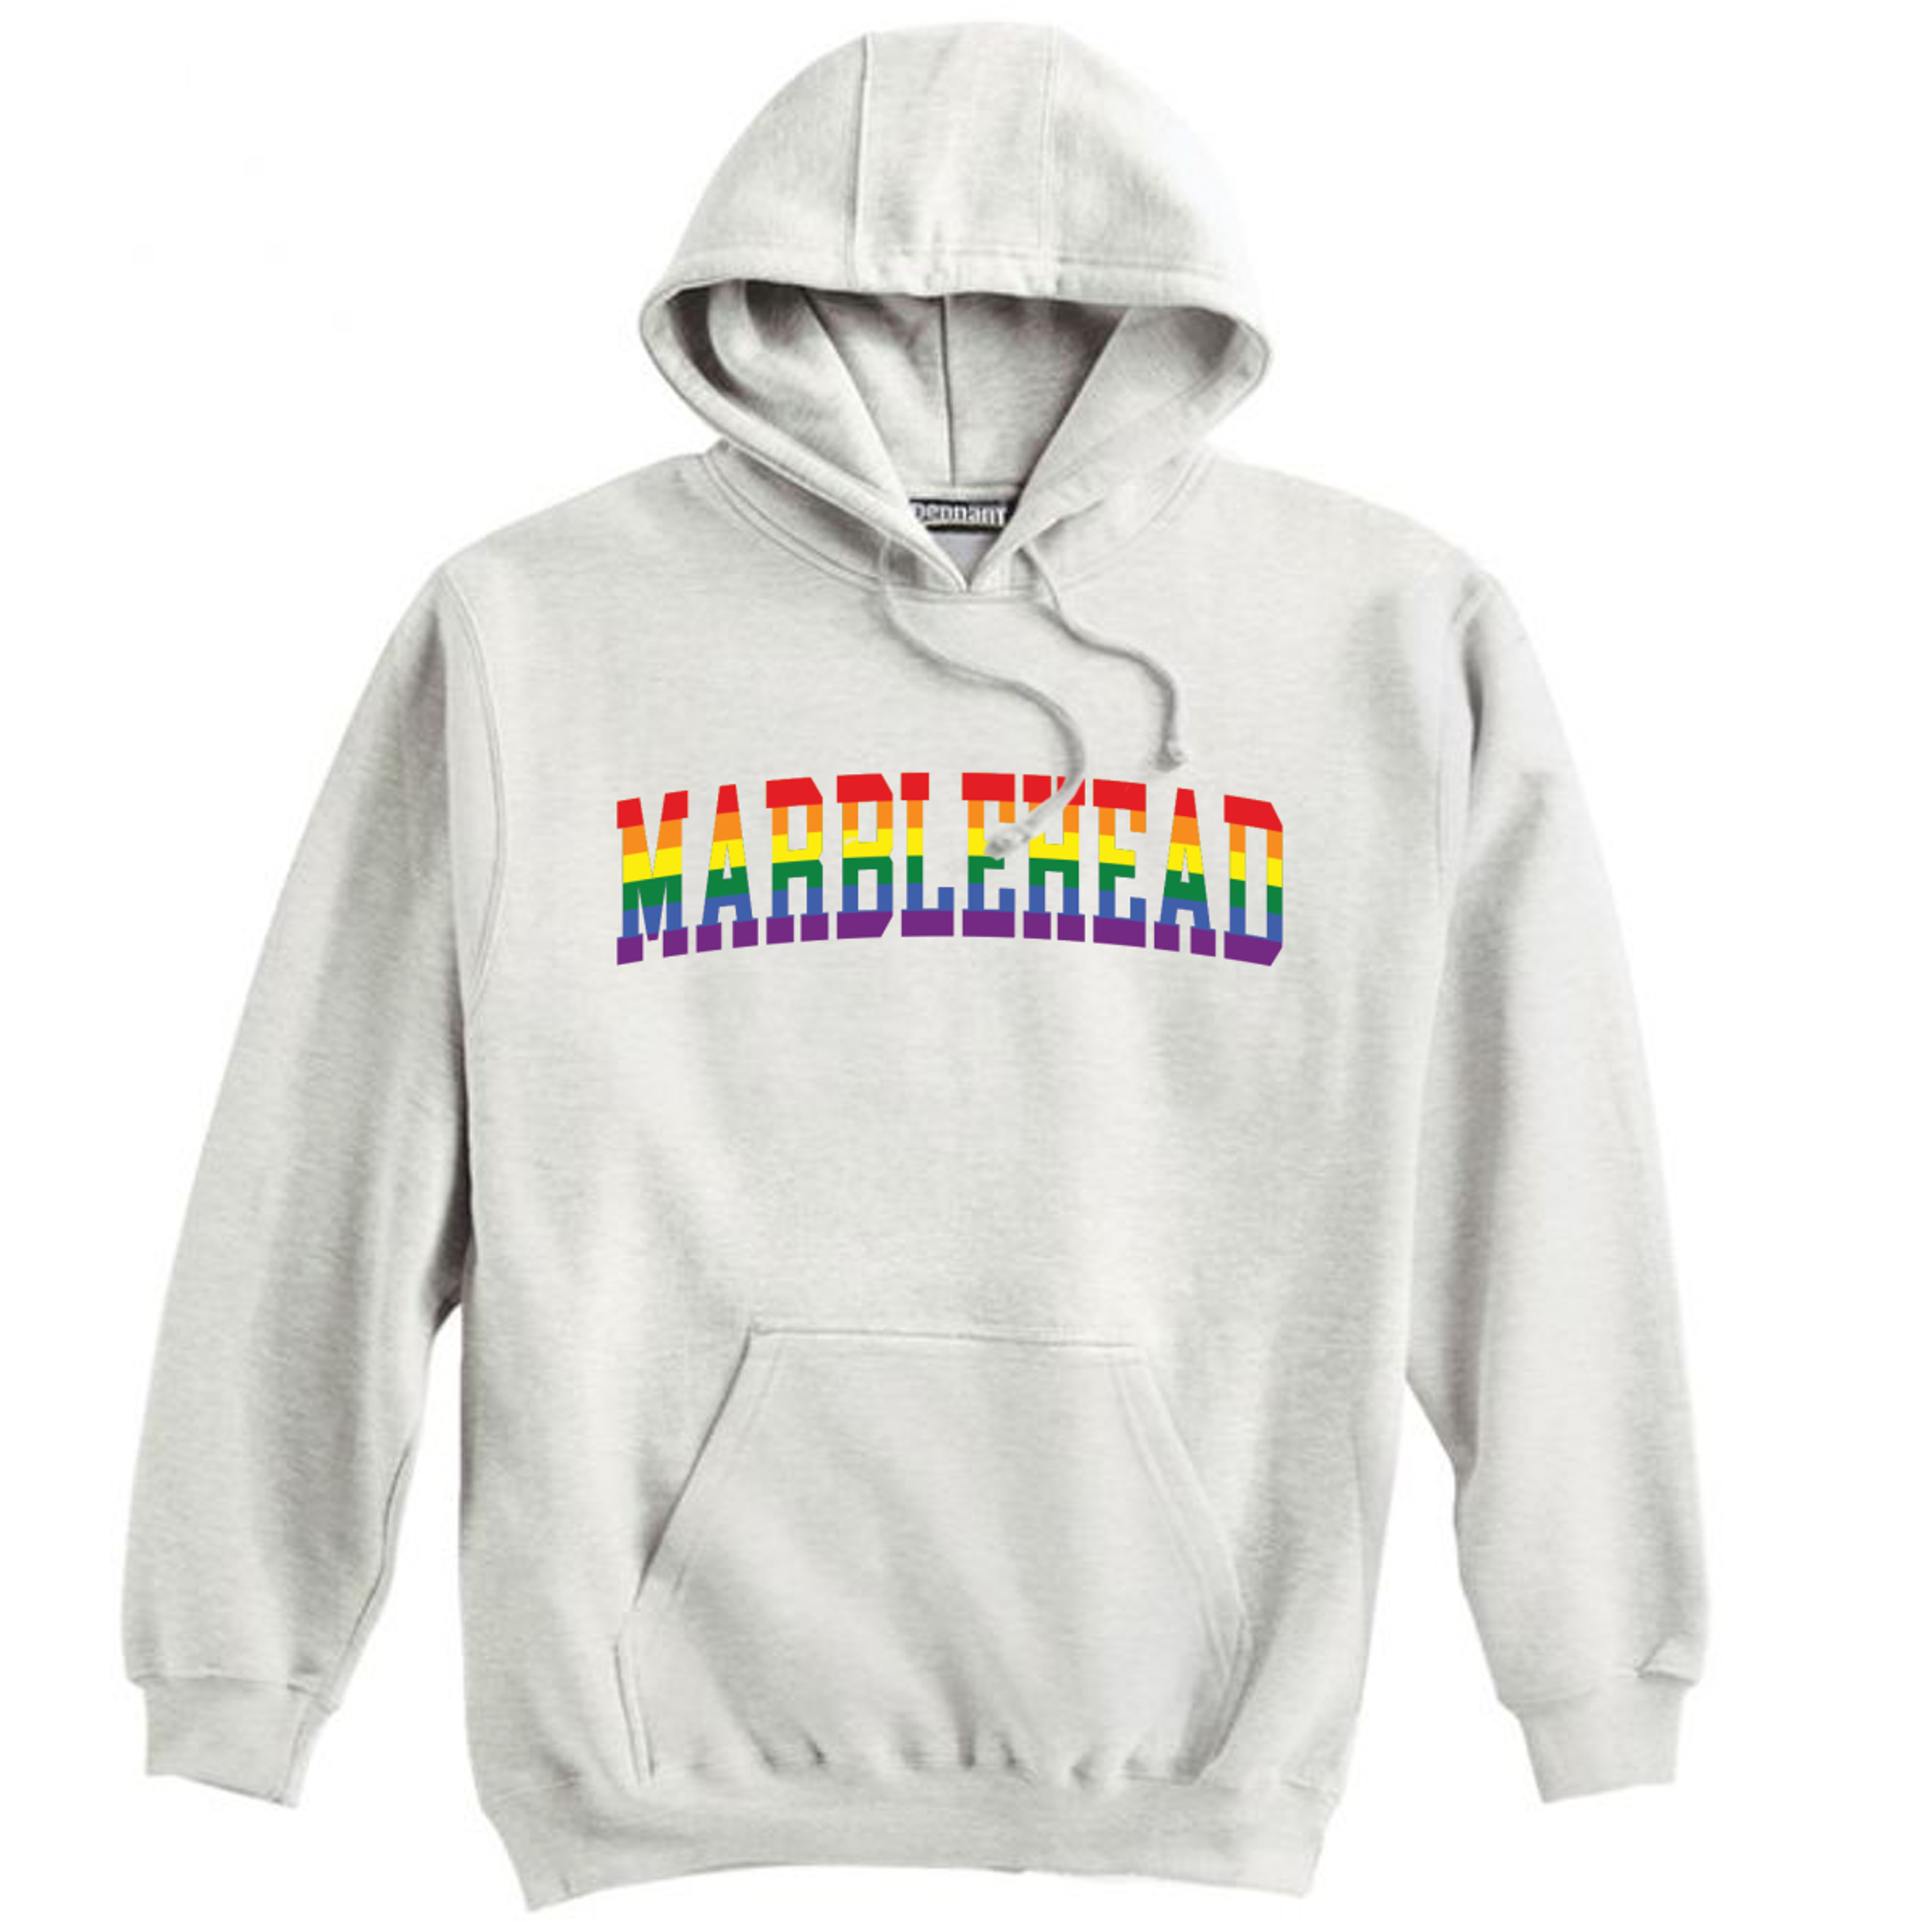 Marblehead Pride Premium Hoodie